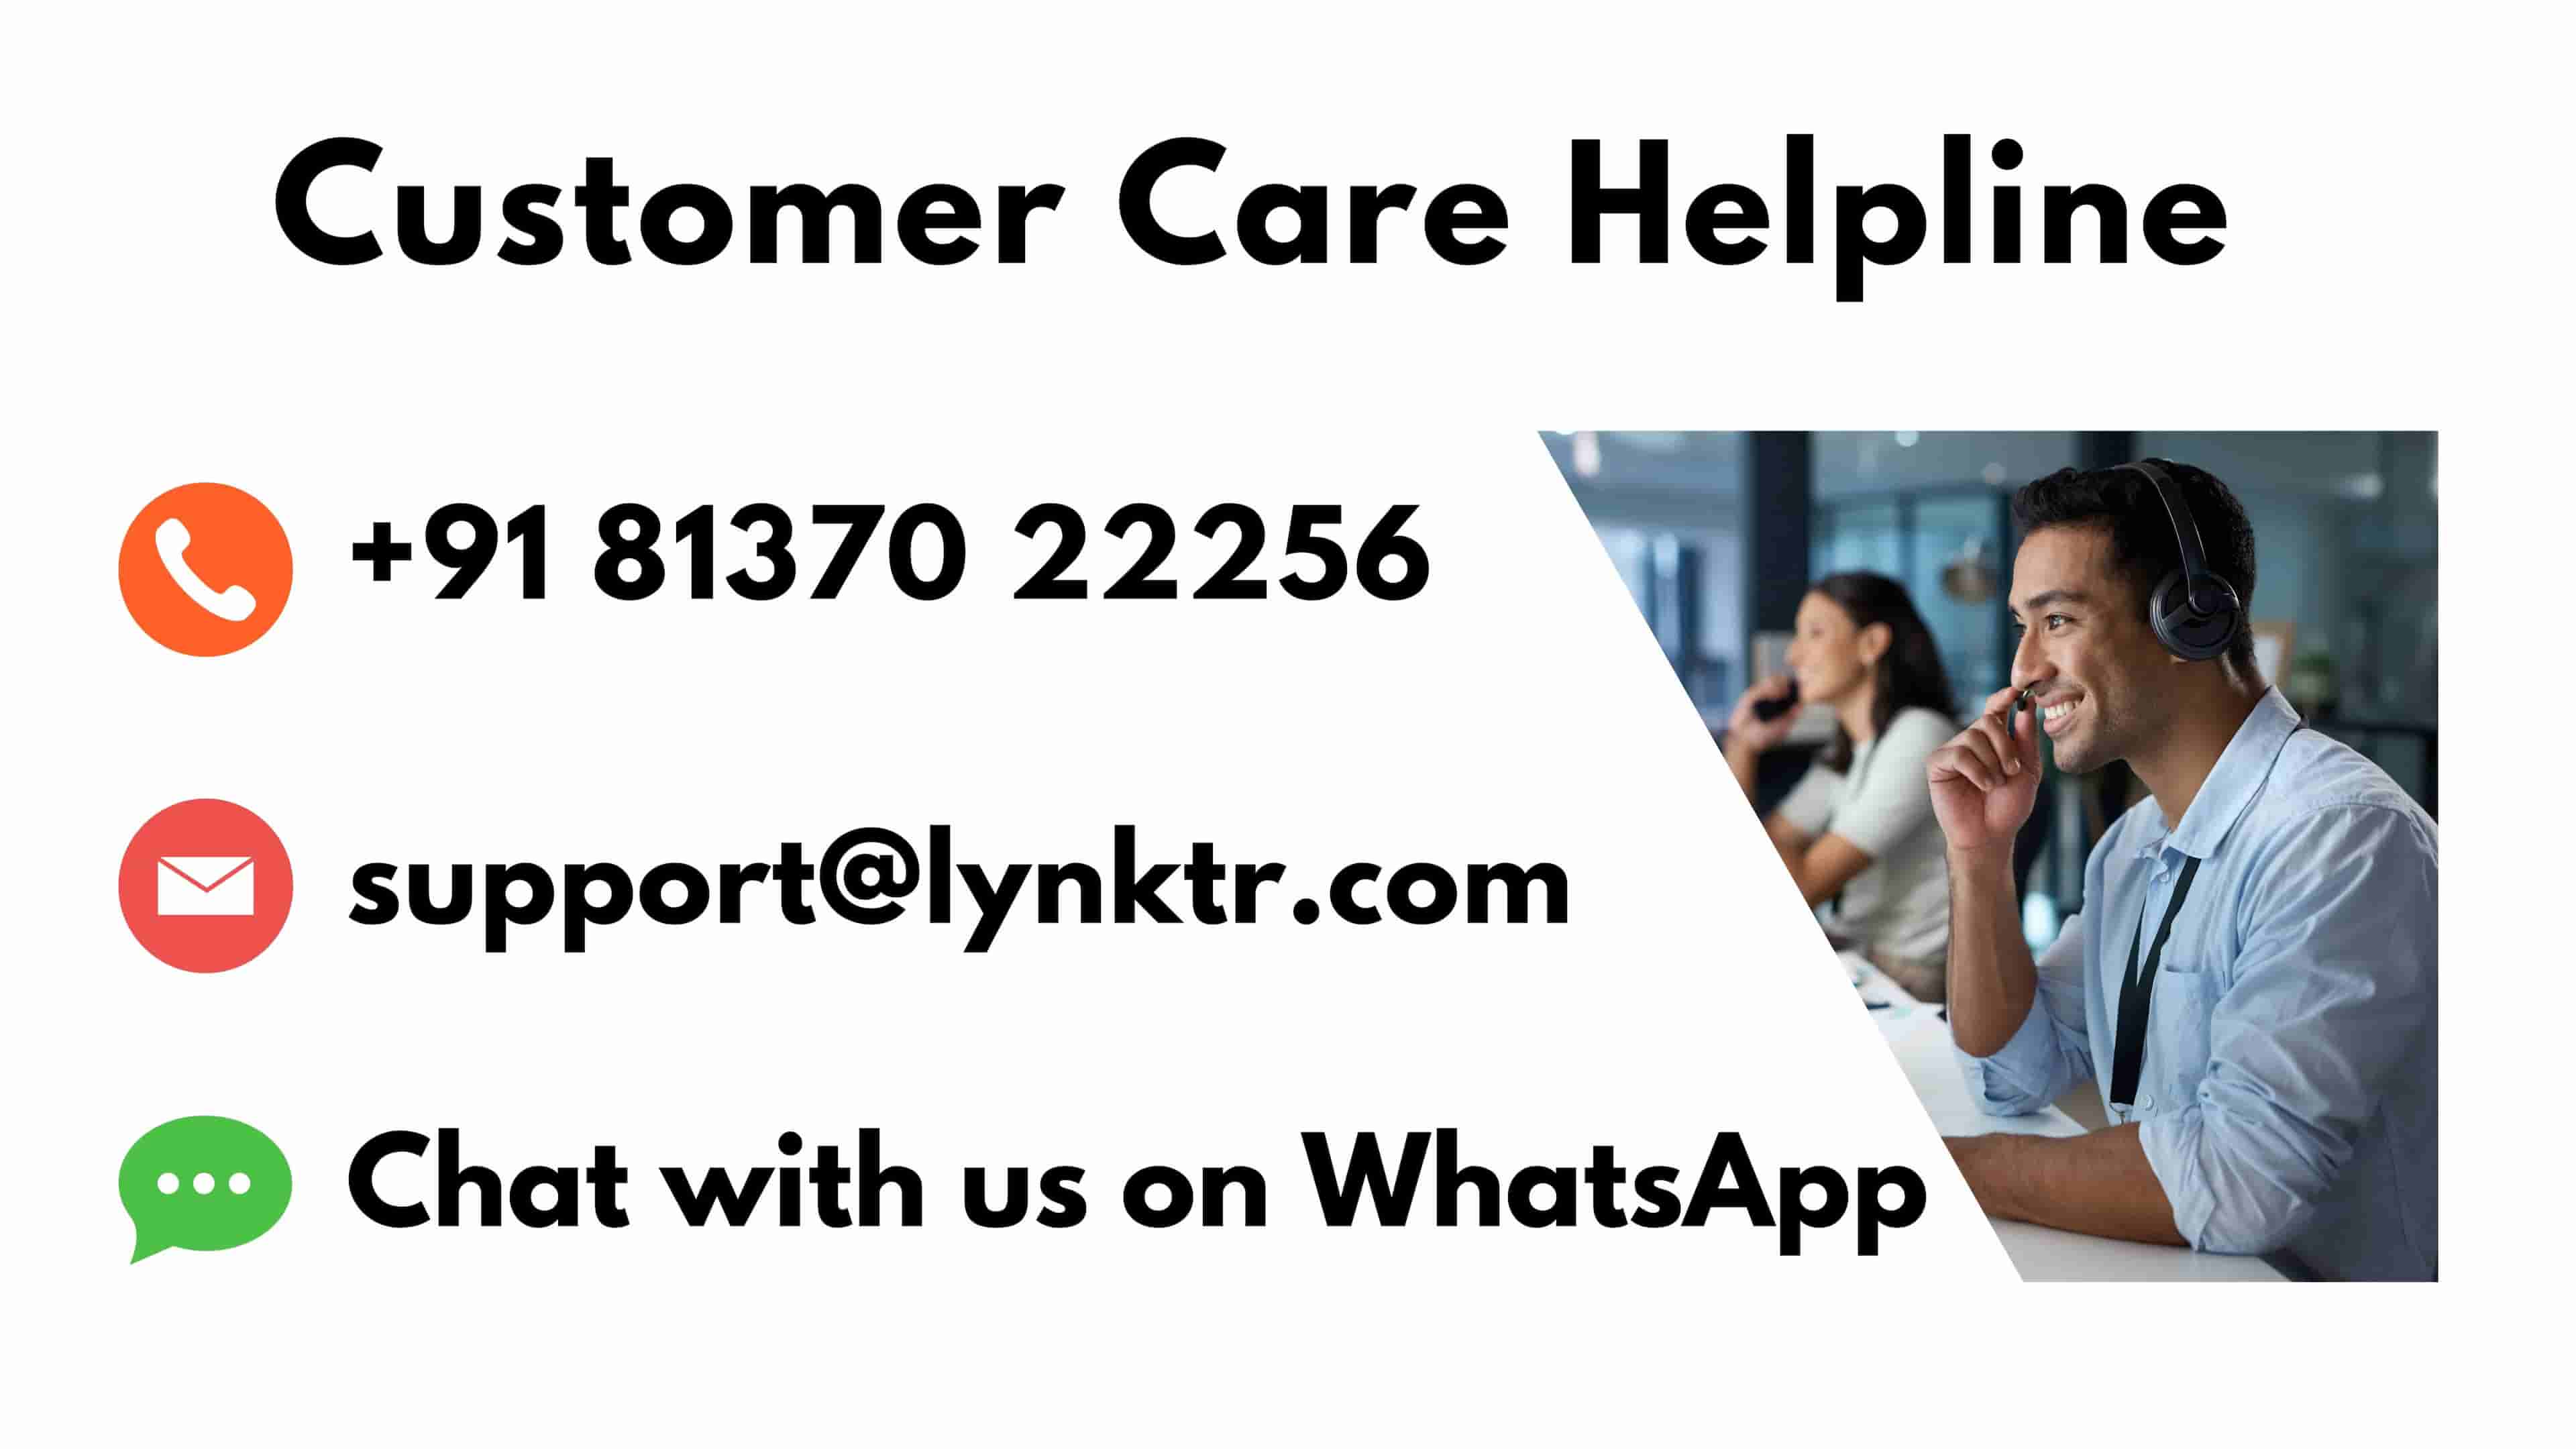 Lynktr-Customer-Service-Helpline-details